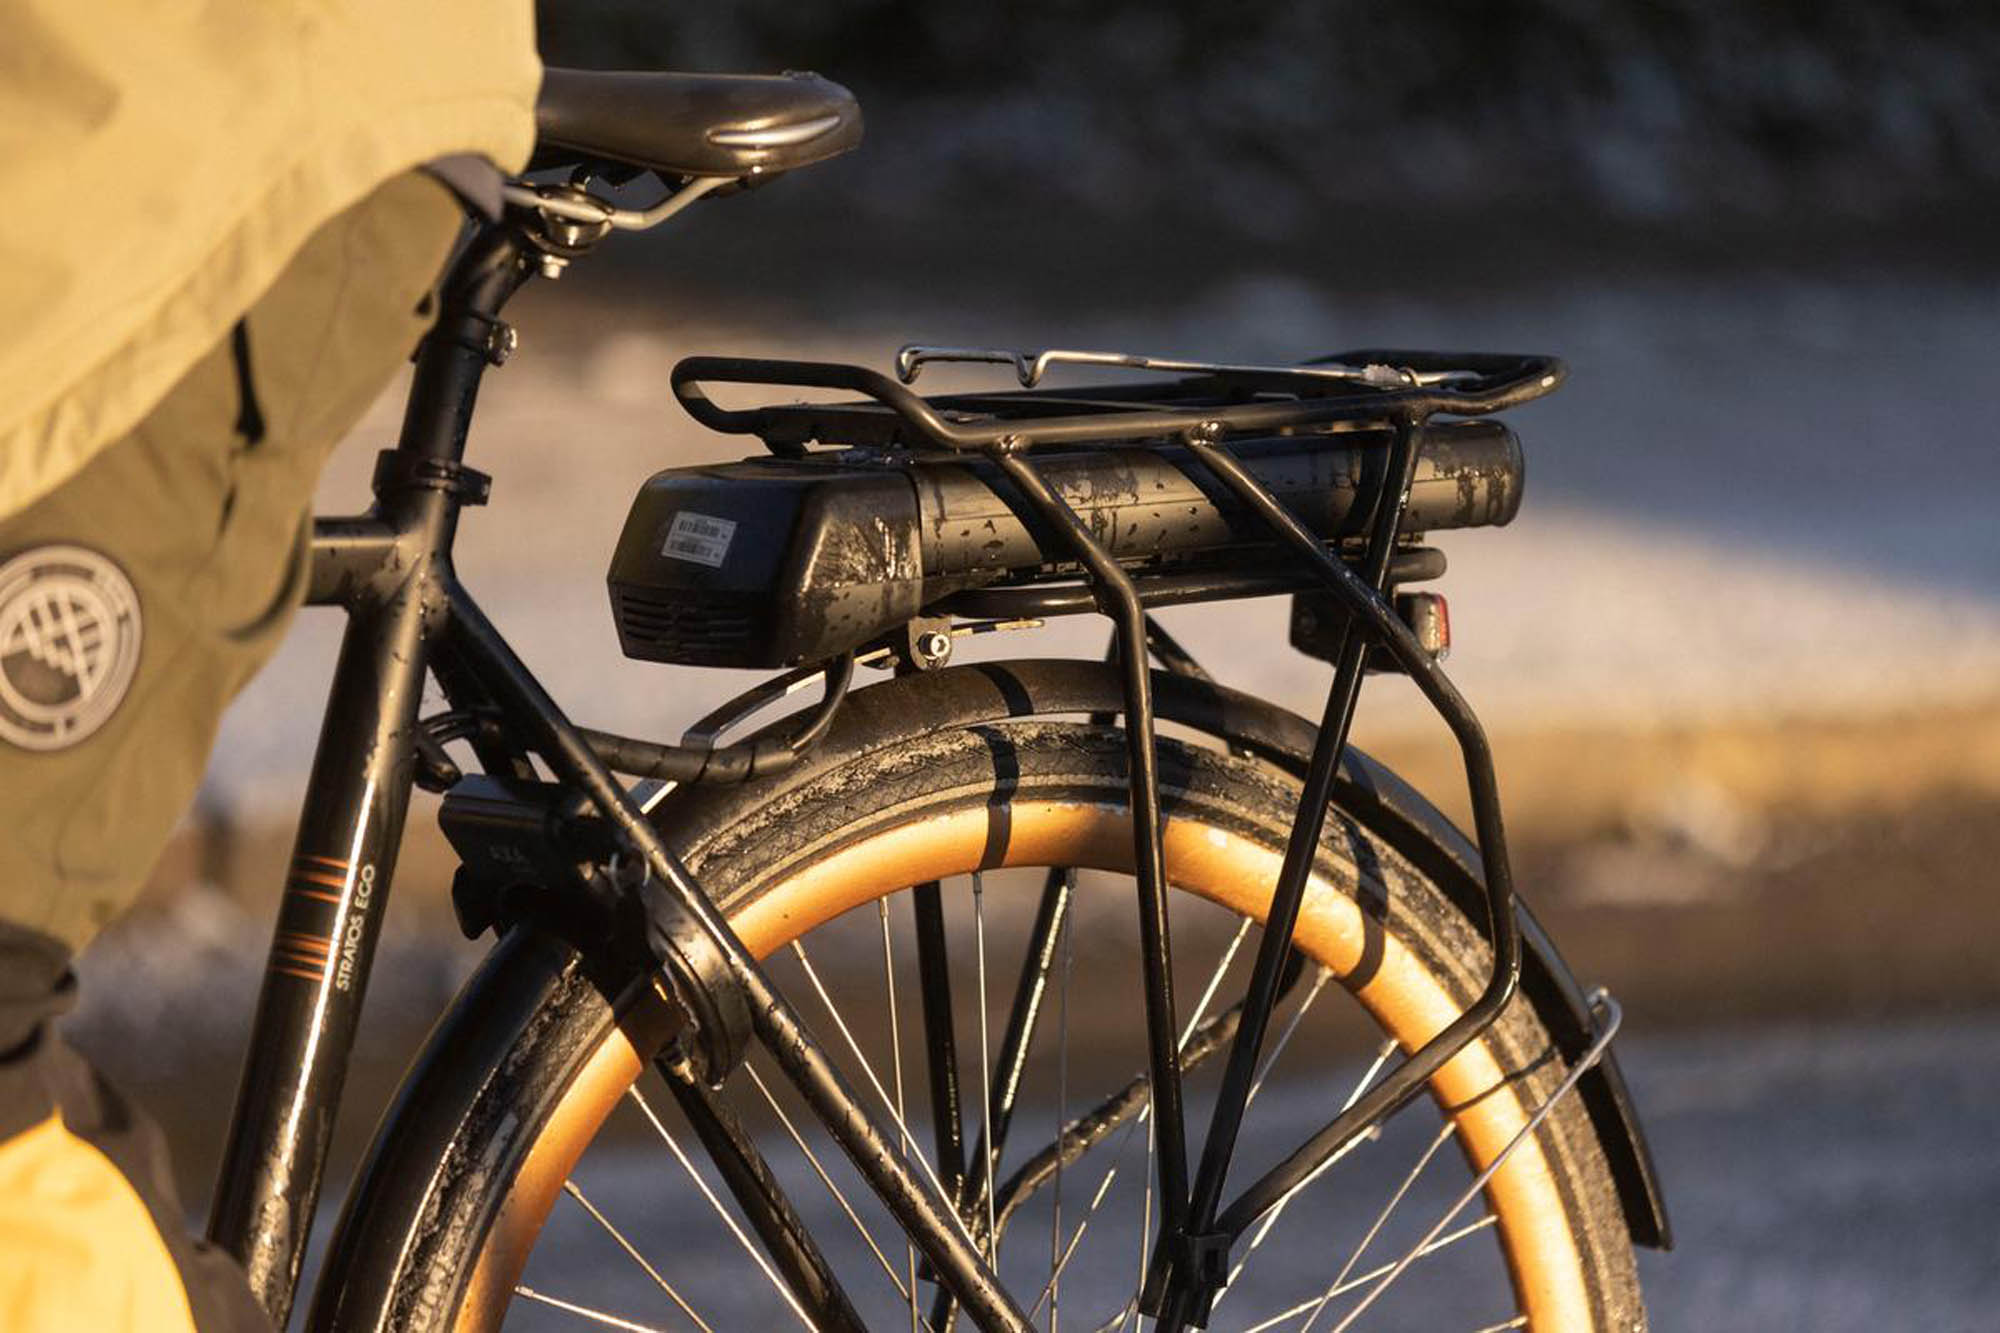 En ny rapport fra Vejdirektoratet viser, at danskerne har taget elcyklen til sig i en sådan grad, at den tohjulede med batteri og motor snart kan overhale den klassiske cykel i popularitet. Det gælder både i storbyerne og på landet, blandt unge og ældre.